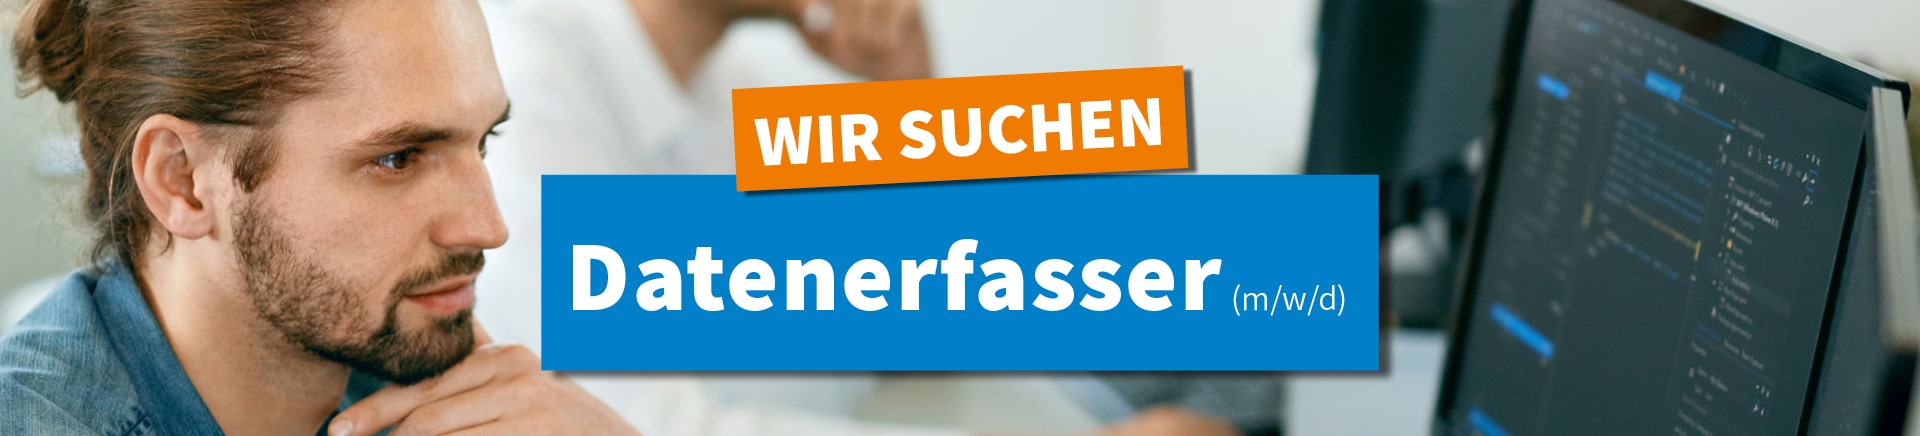 Wir suchen Mitarbeiter (m/w/d) Customer Service in Voll- oder Teilzeit in Saarbrücken | WIR + IRW